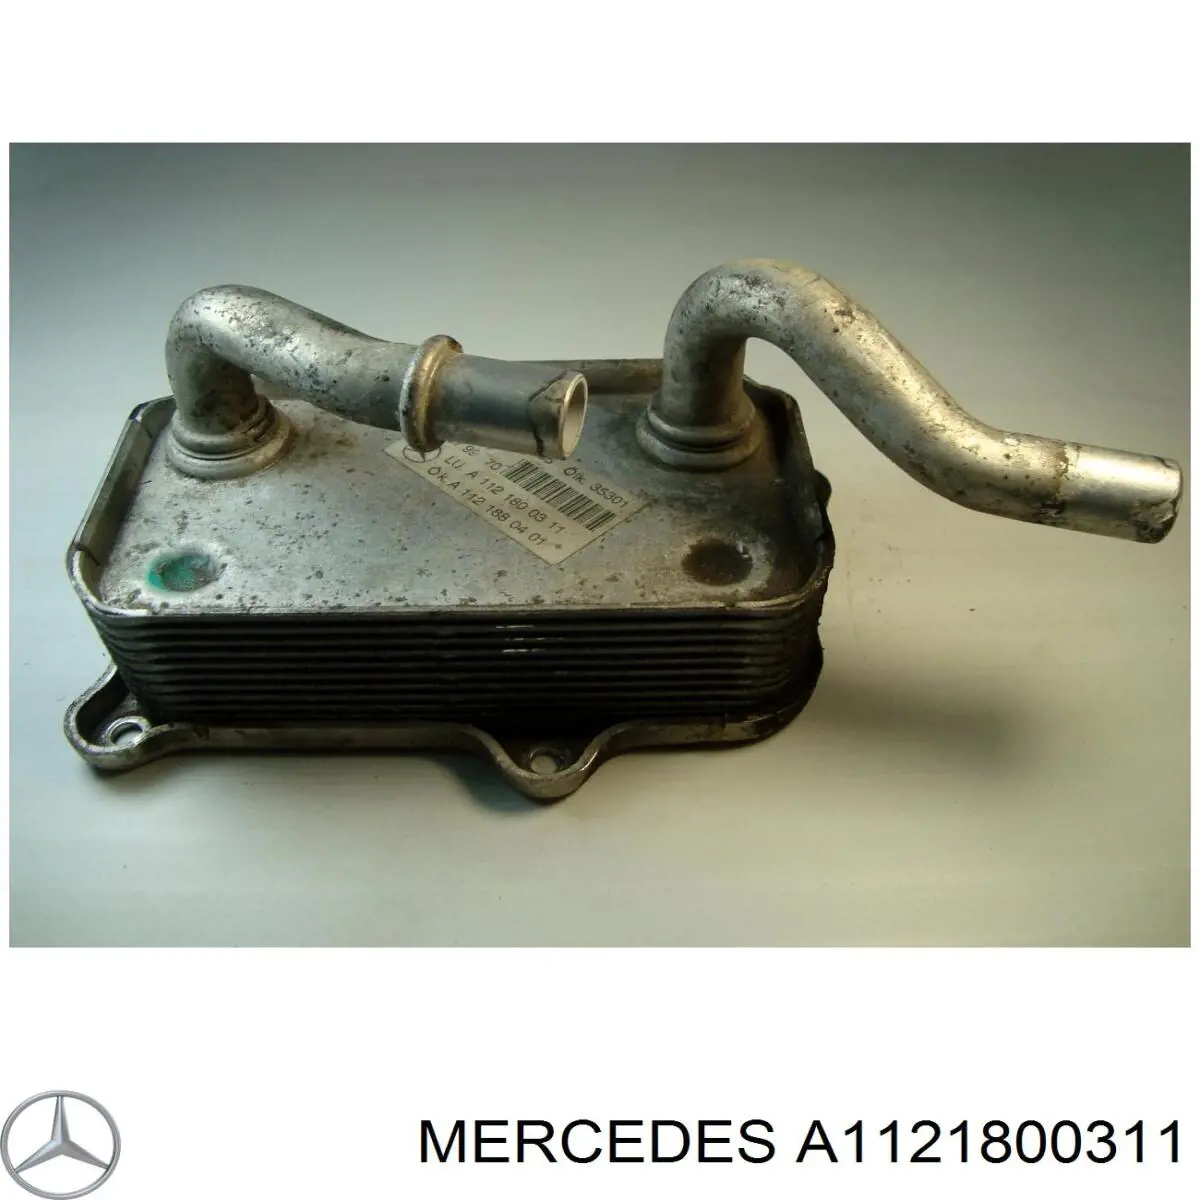 A1121800311 Mercedes radiador de óleo